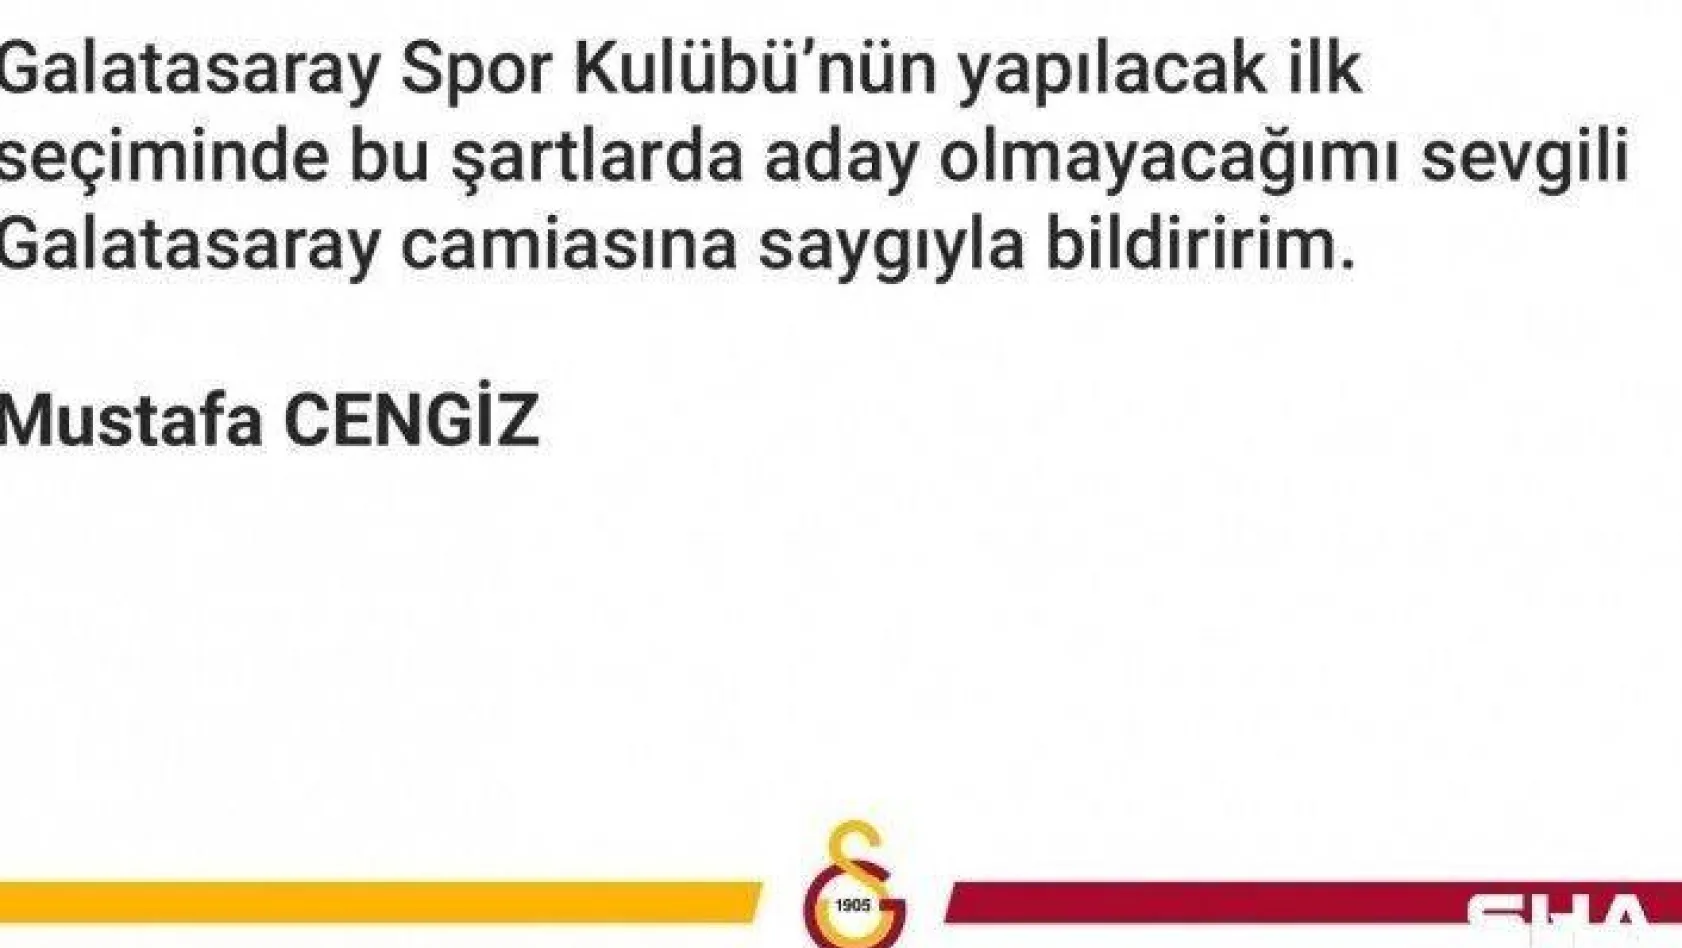 Galatasaray Başkanı Mustafa Cengiz: &quotGalatasaray Spor Kulübü'nün yapılacak ilk seçiminde bu şartlarda aday olmayacağımı sevgili Galatasaray camiasına saygıyla bildiririm"